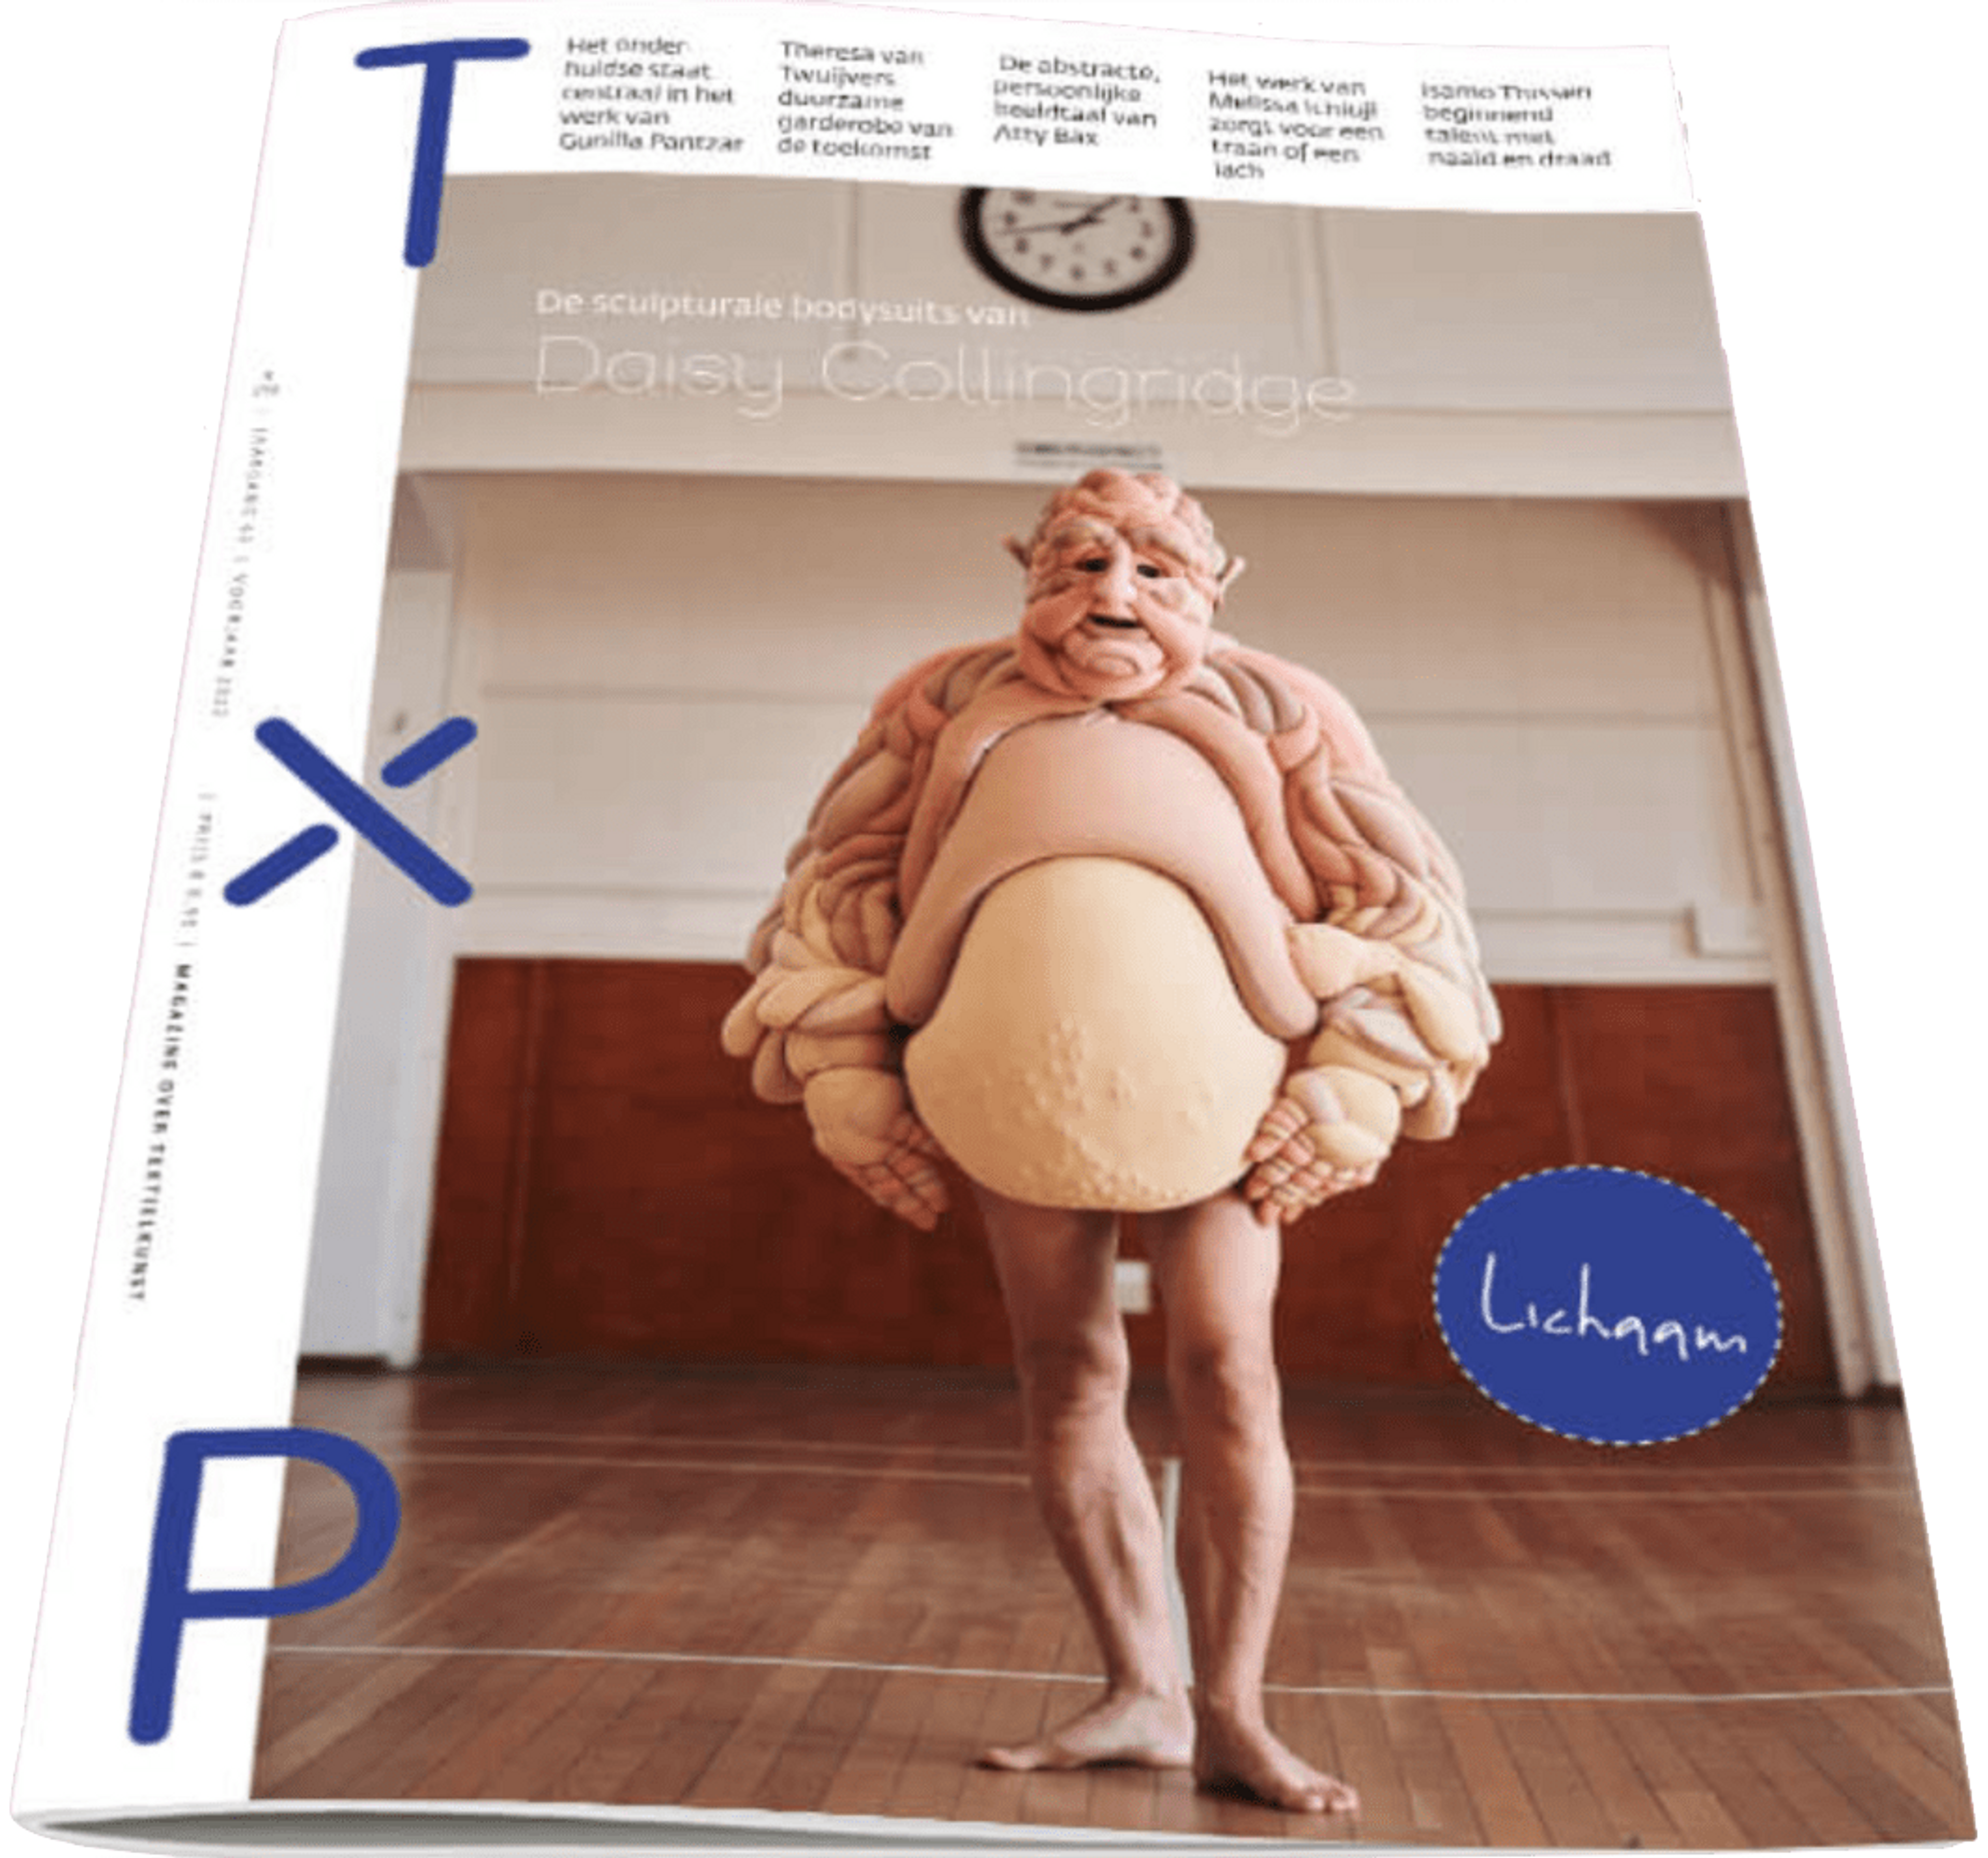 TxP (Textiel Plus) naar Uitgeverij Scala